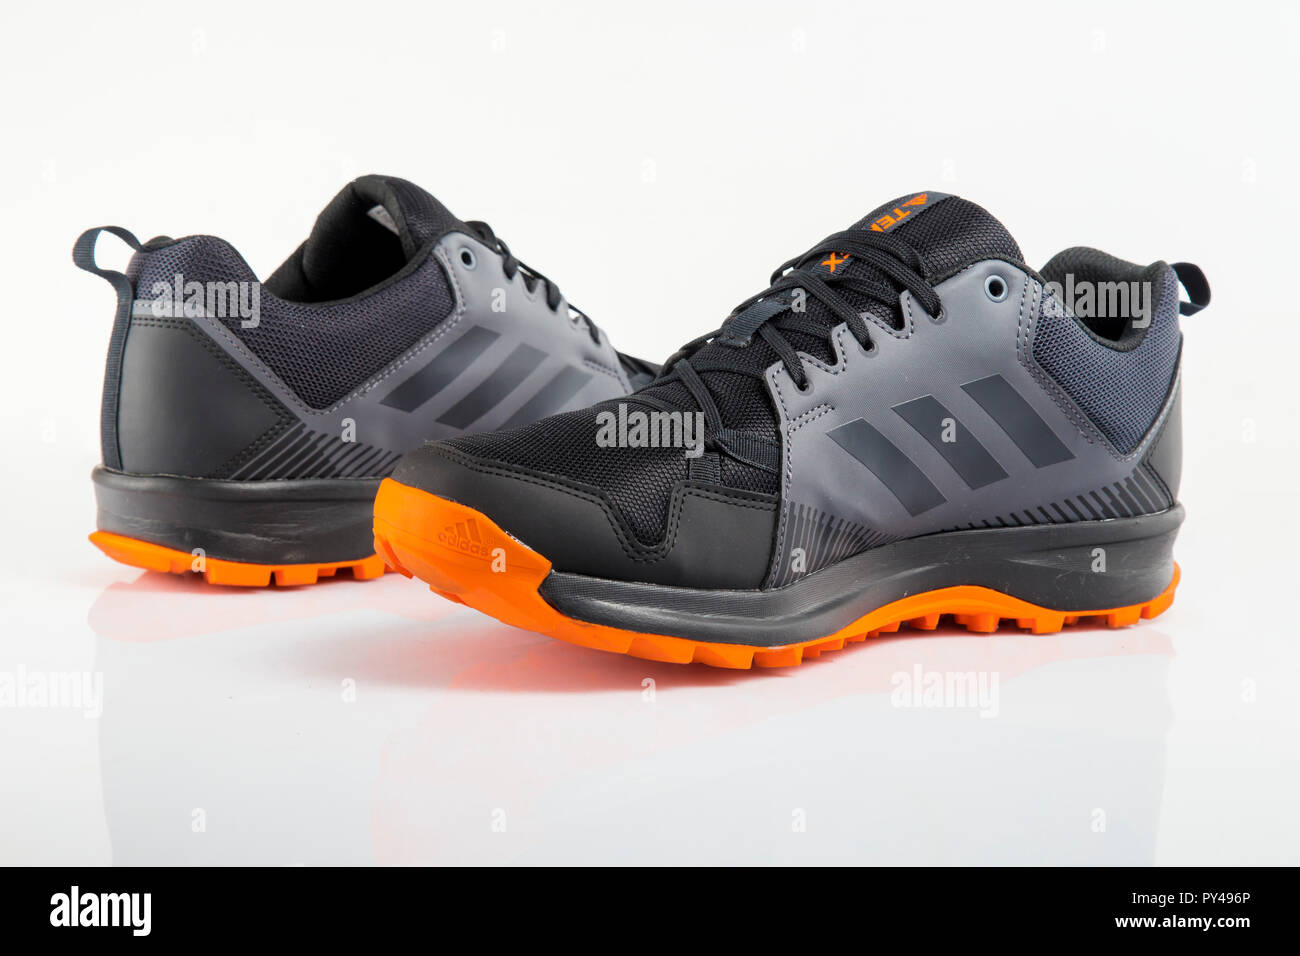 Afife, Portugal - Oktober 24, 2018: adidas Running Schuhe. Adidas, multinationales Unternehmen. Auf weiß isoliert. Produkt Fotos Stockfoto